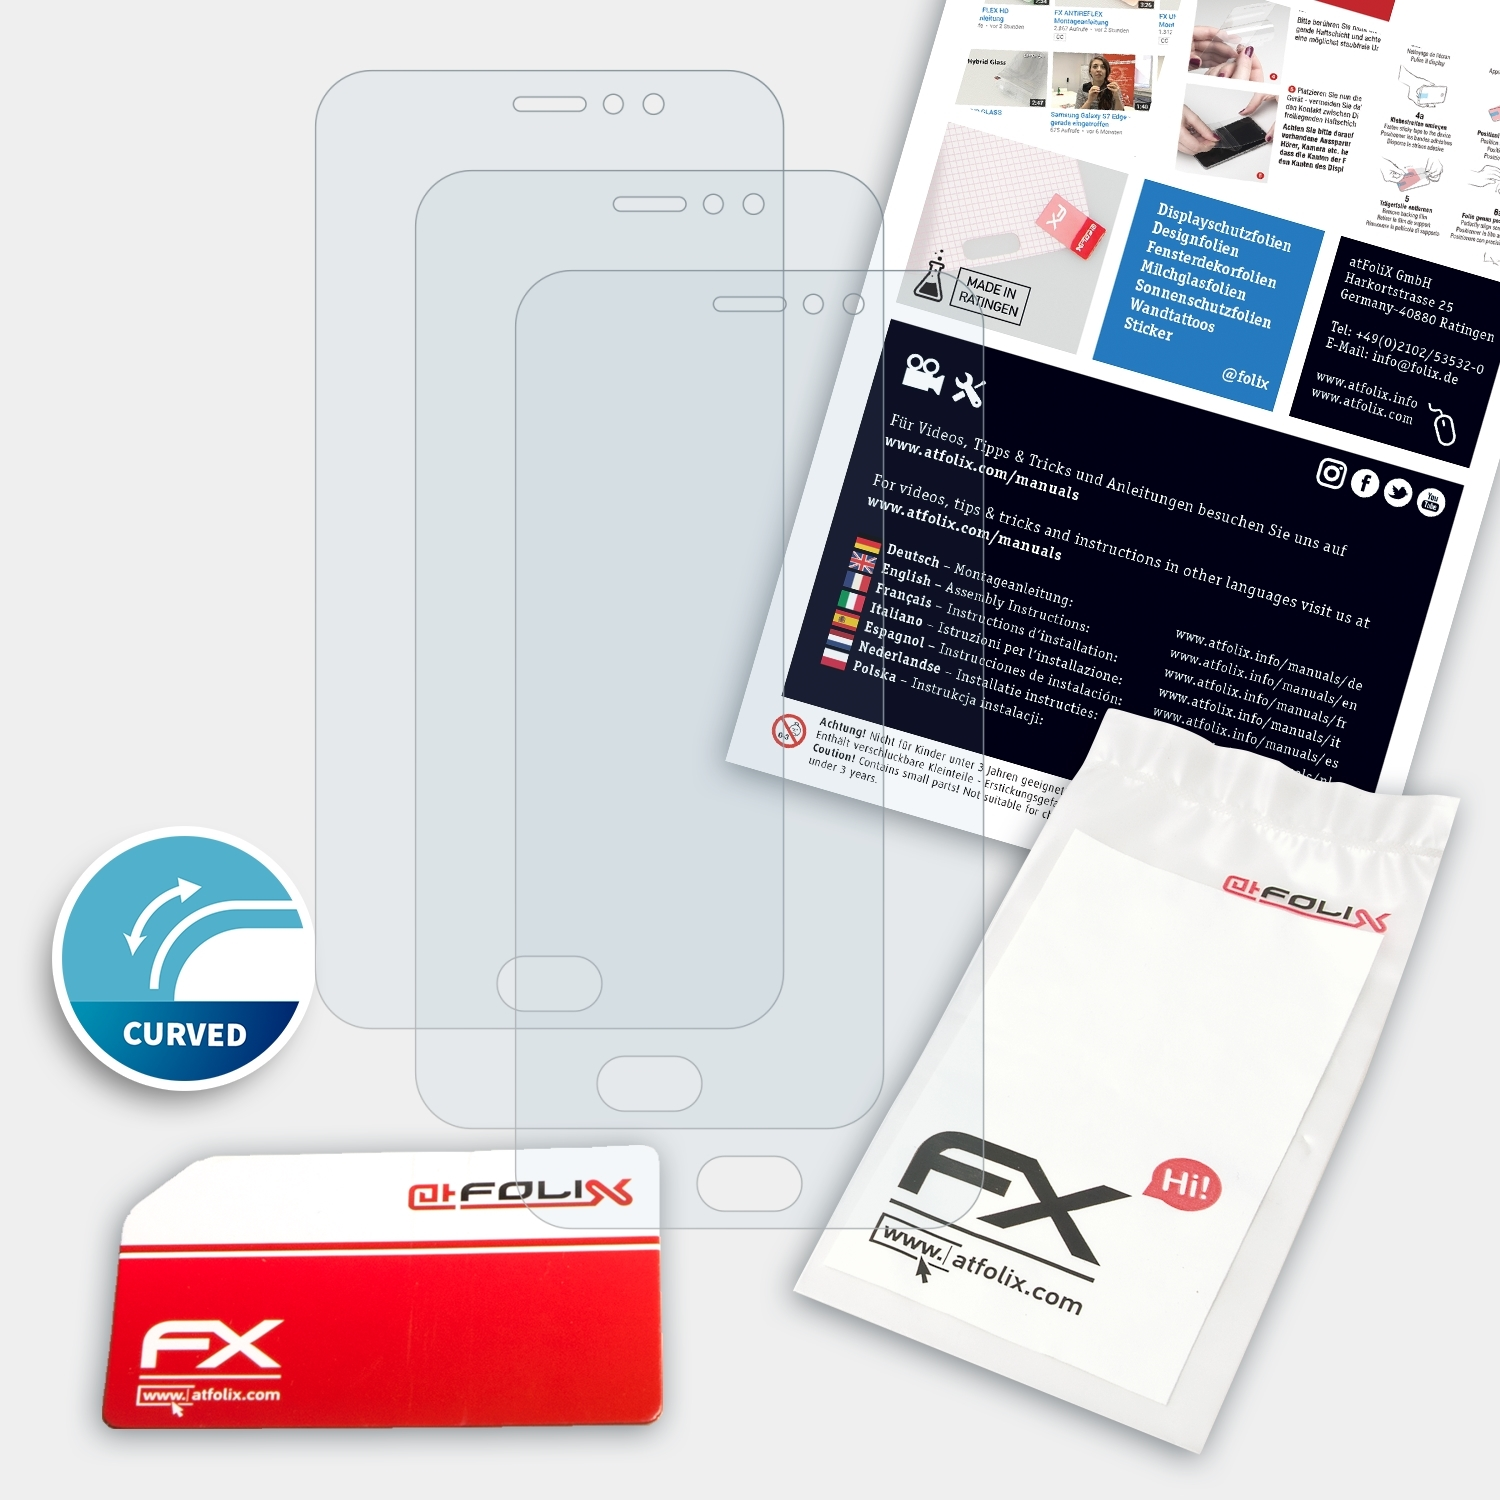 ATFOLIX 3x FX-ActiFleX Meizu Plus) Displayschutz(für 6 Pro